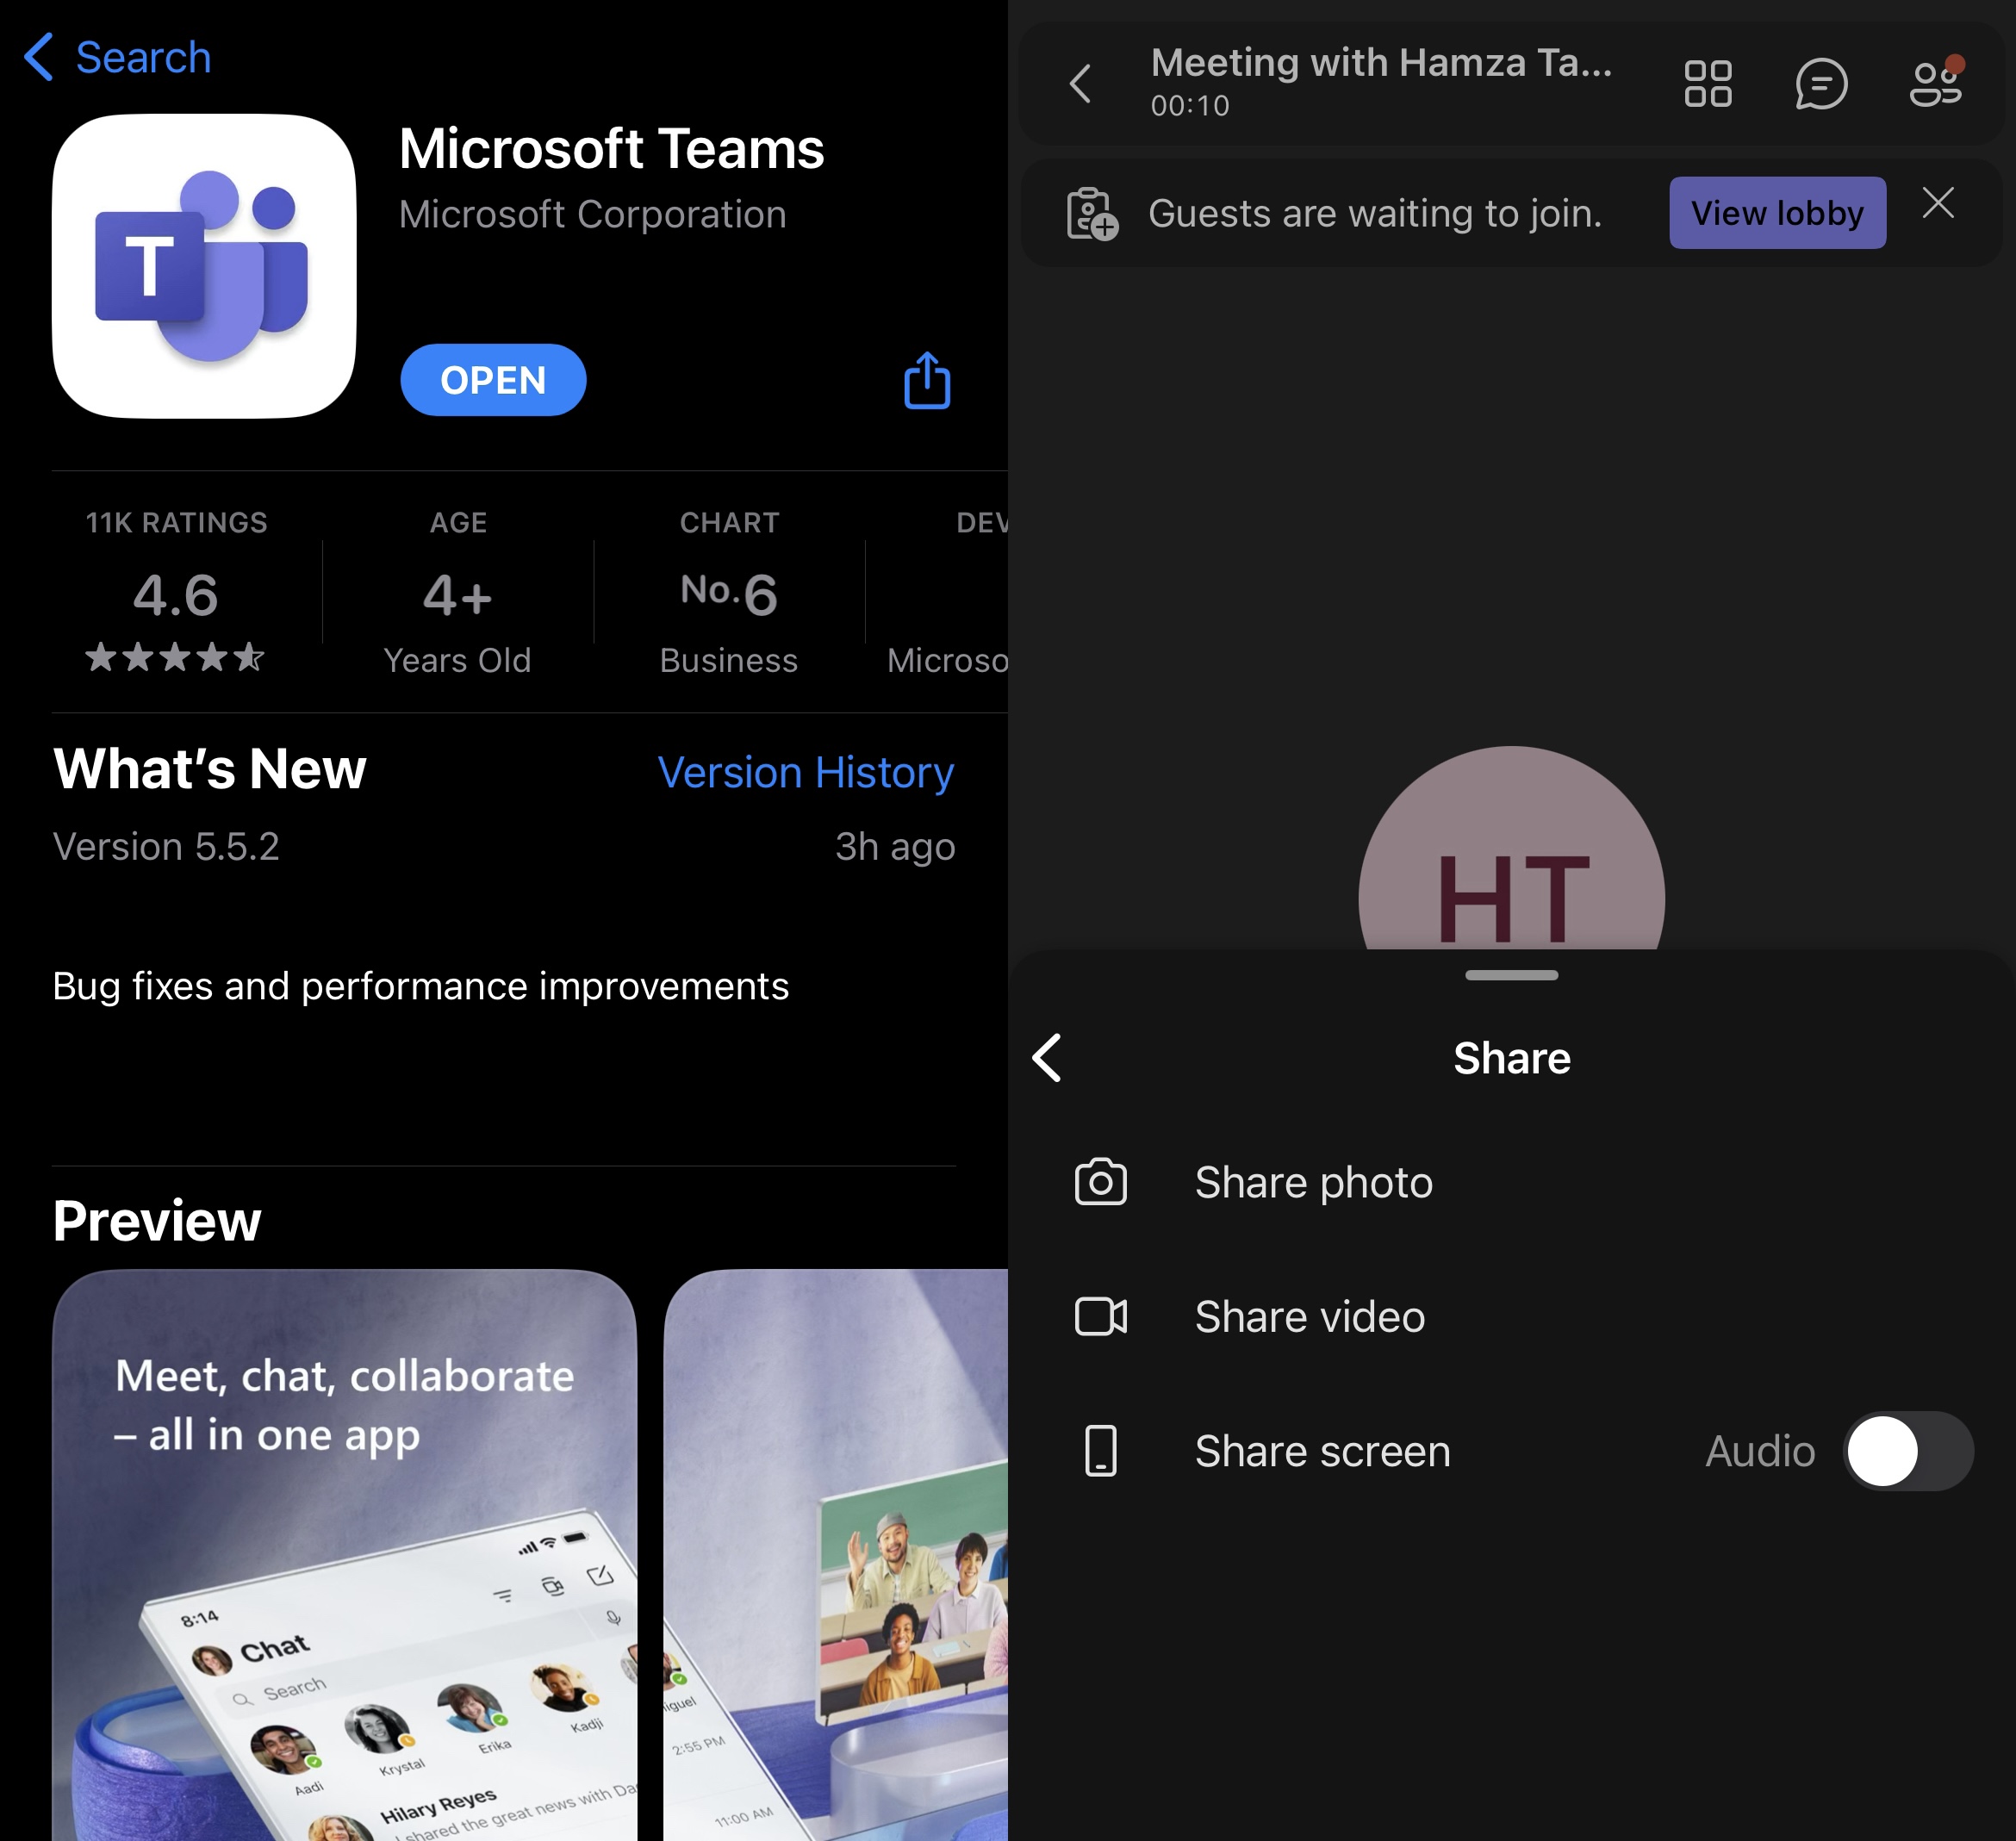 Sharing screens using Microsoft Teams